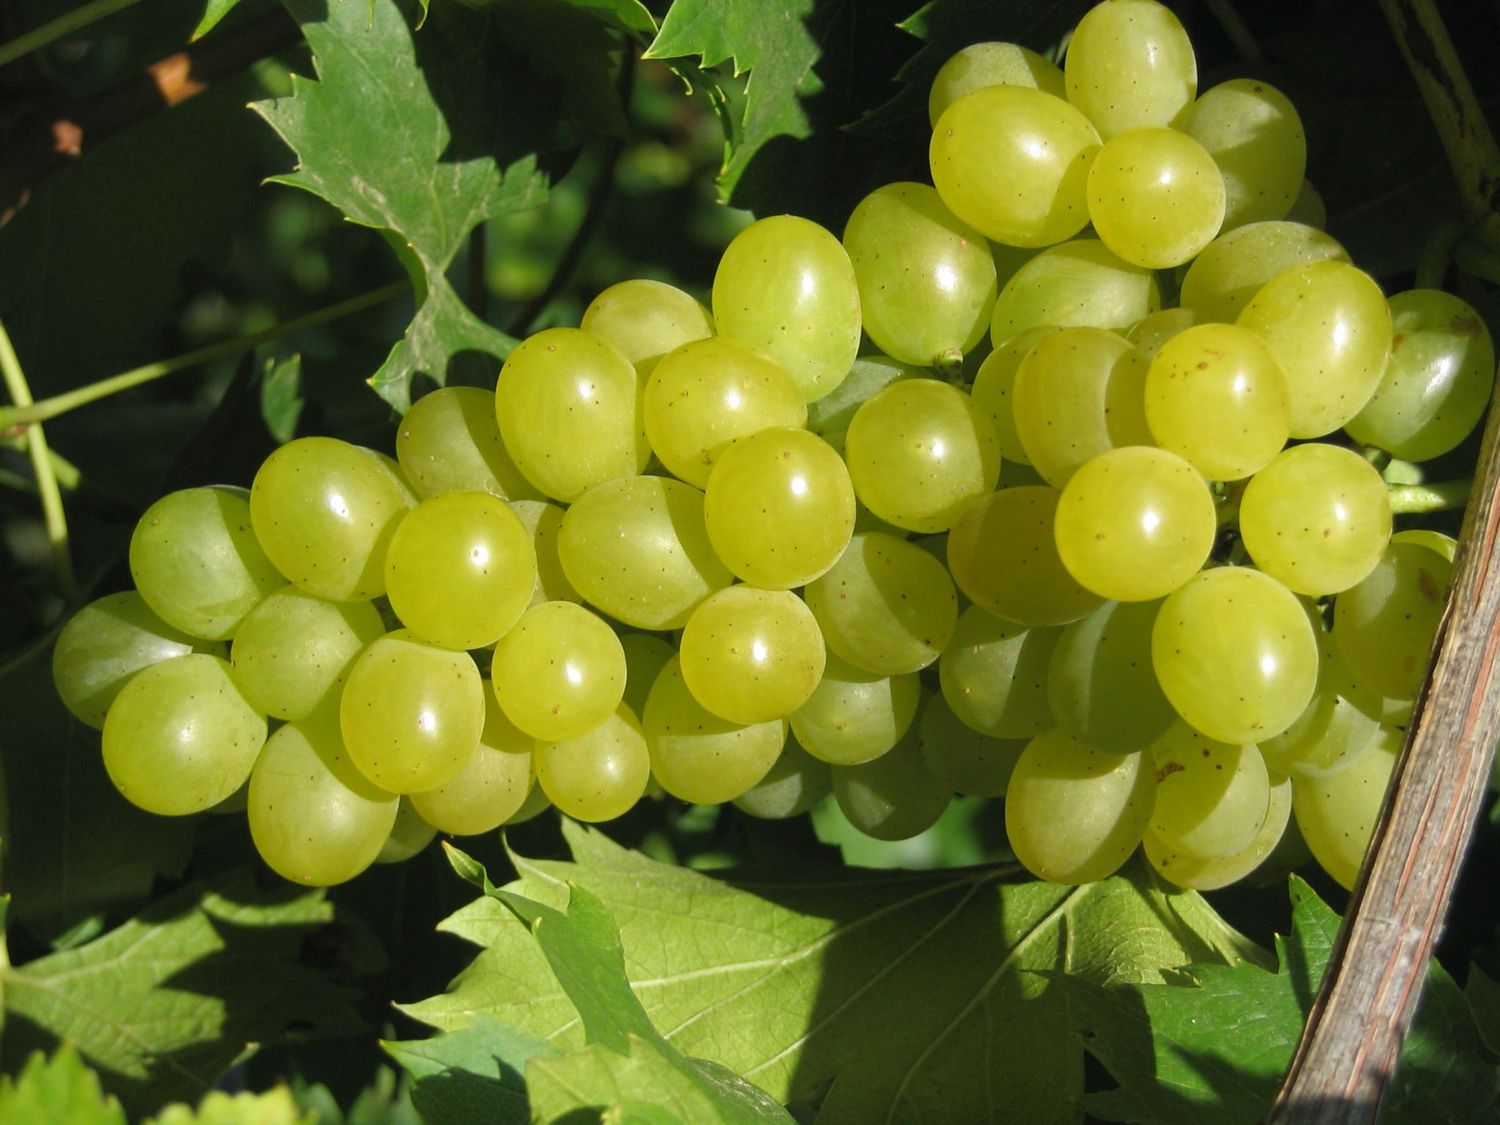 Weinreben-Sortiment, bestehend aus je 1 Pflanze Phönix ®, Regent ® und Lakemont kernlos ®